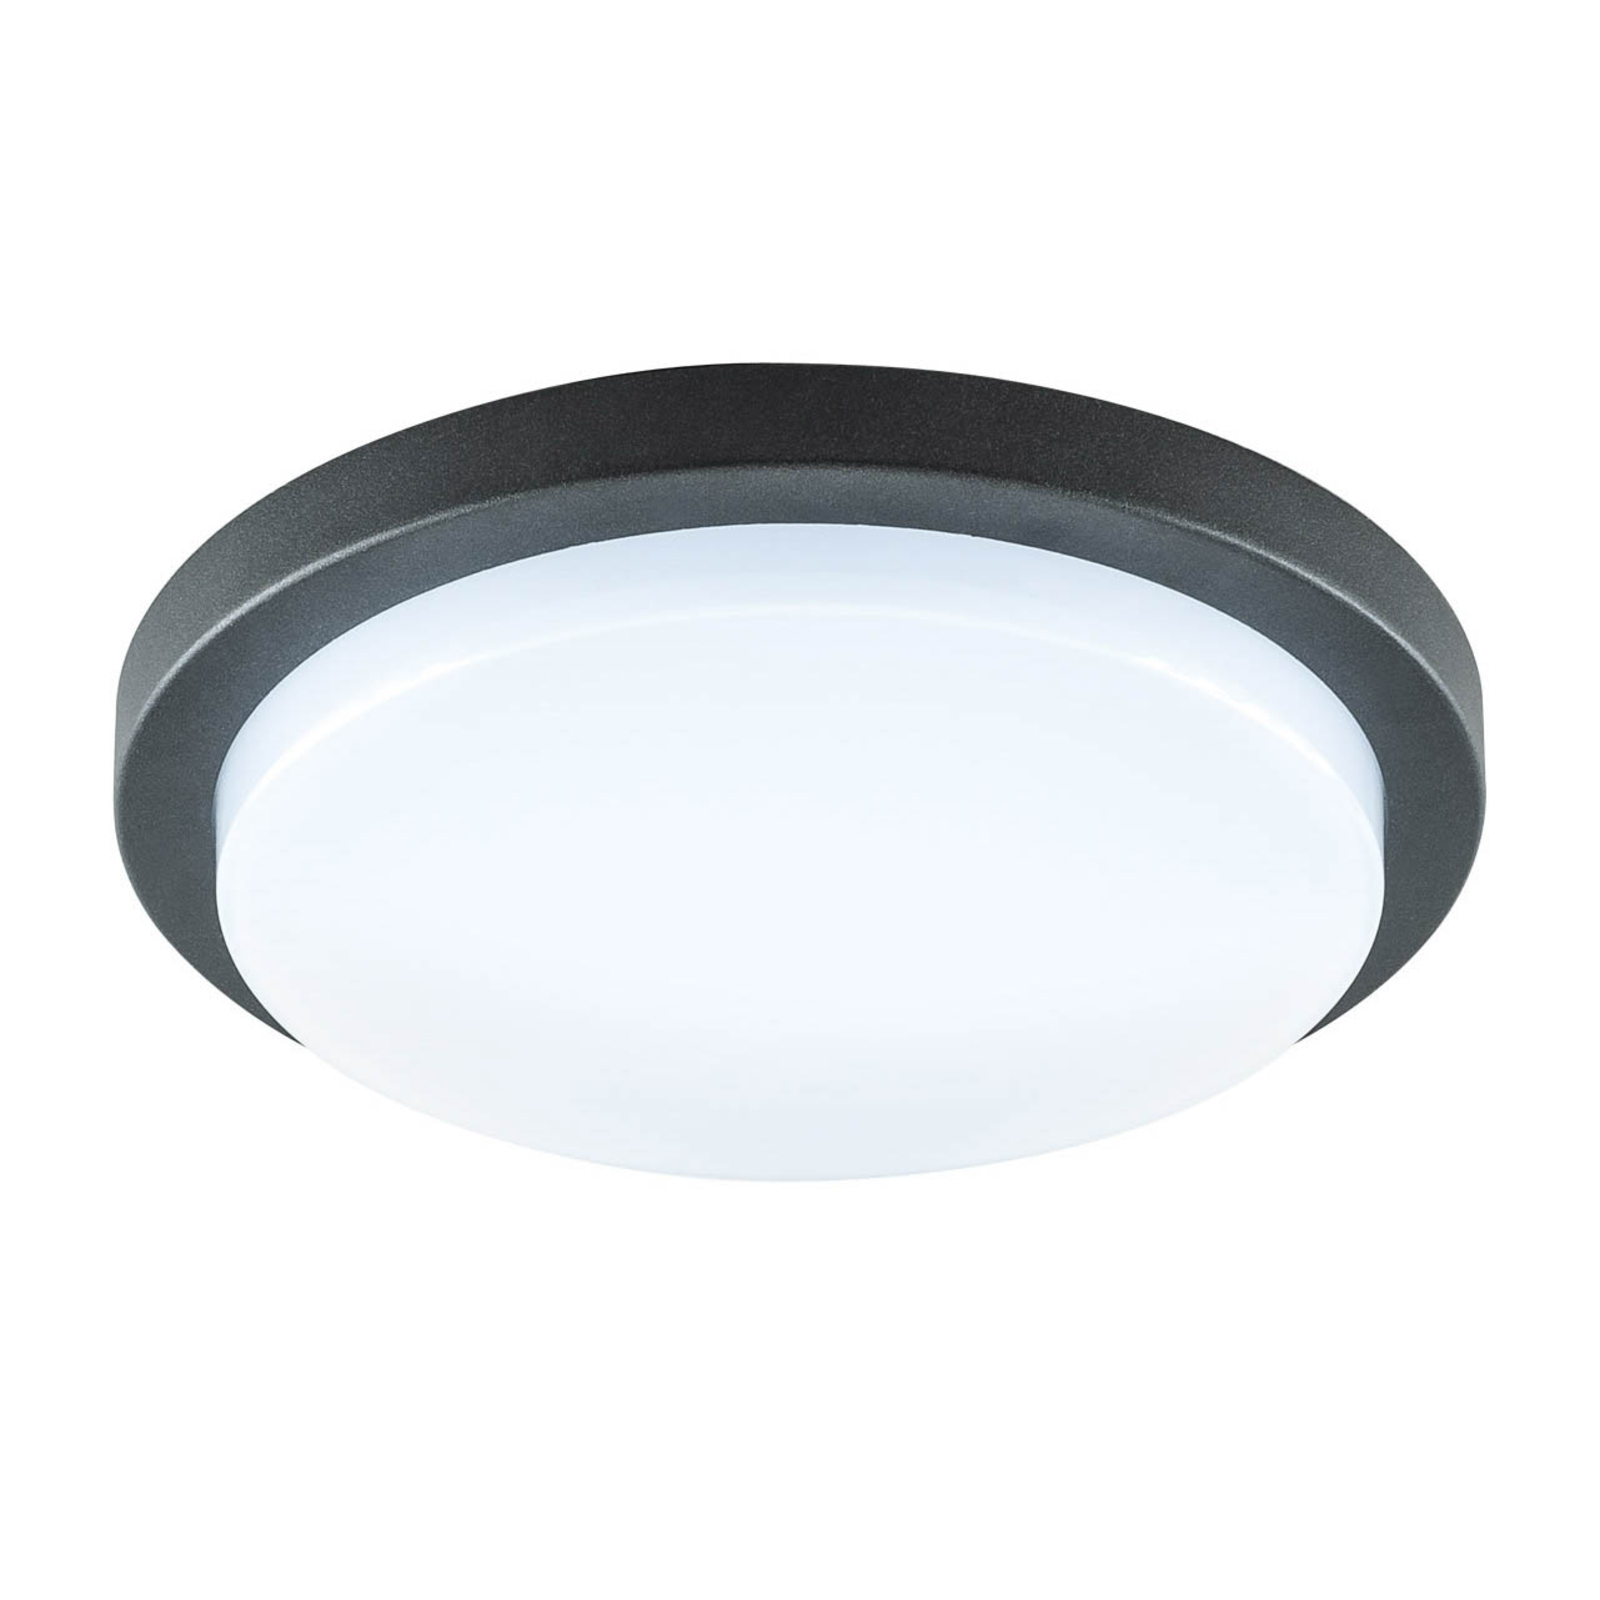 EVN Tectum LED outdoor ceiling light round 24.6 cm